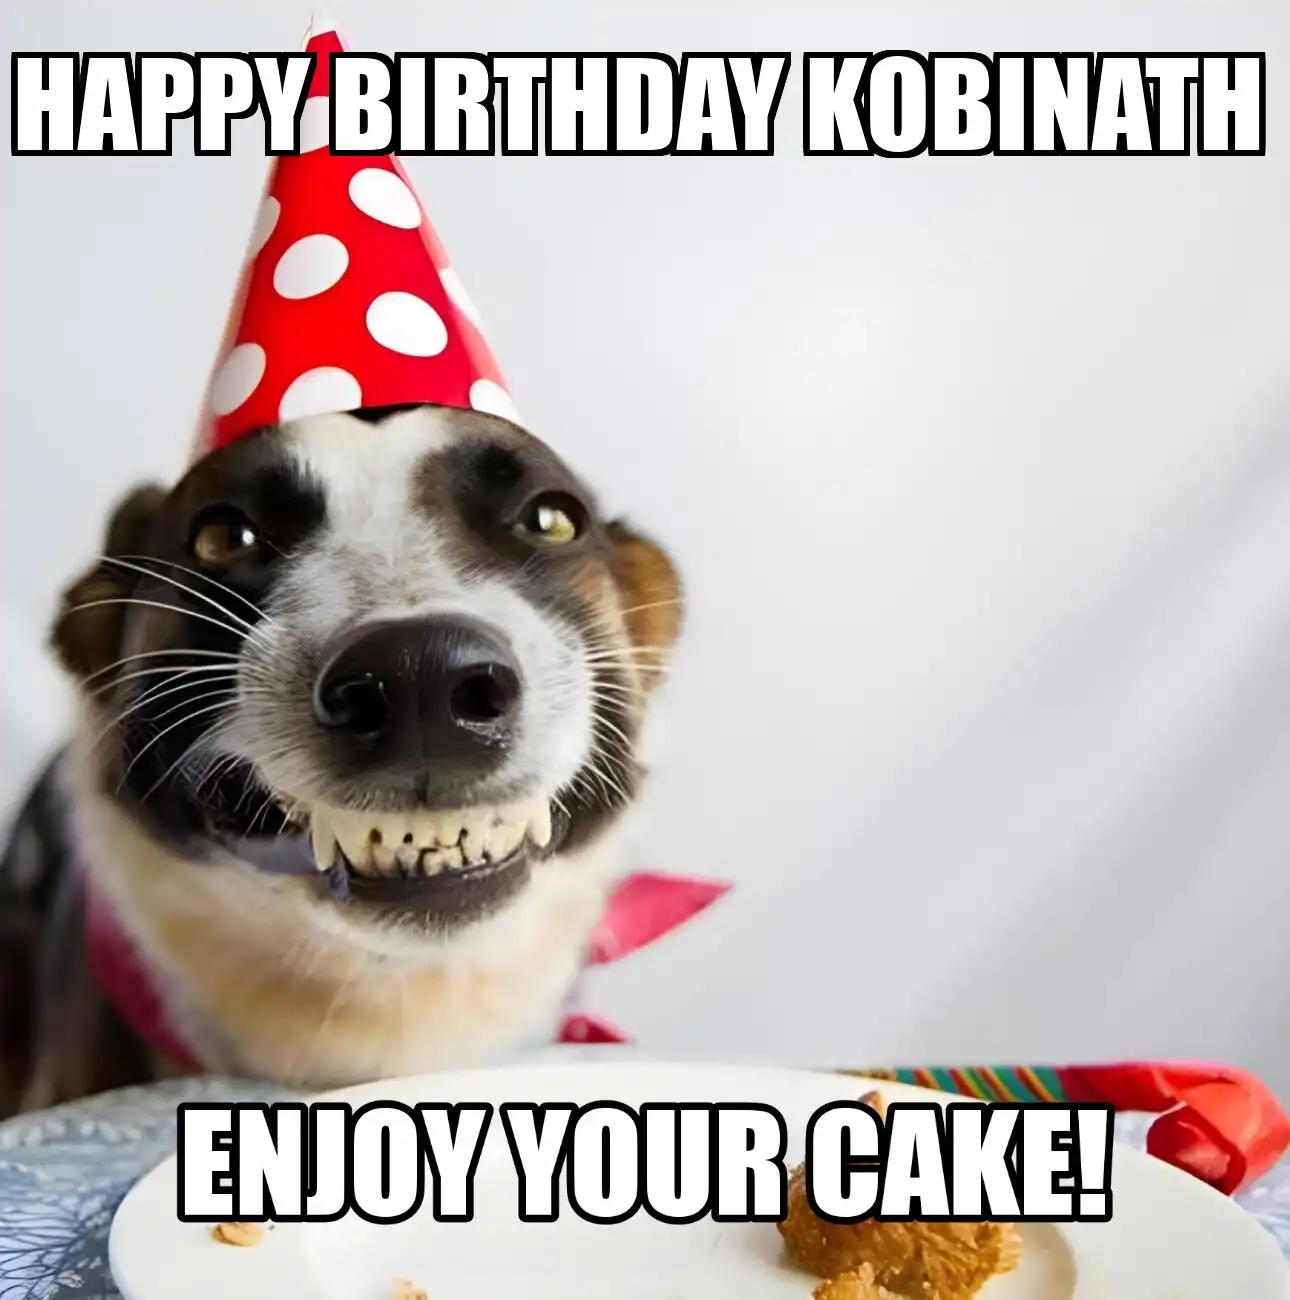 Happy Birthday Kobinath Enjoy Your Cake Dog Meme